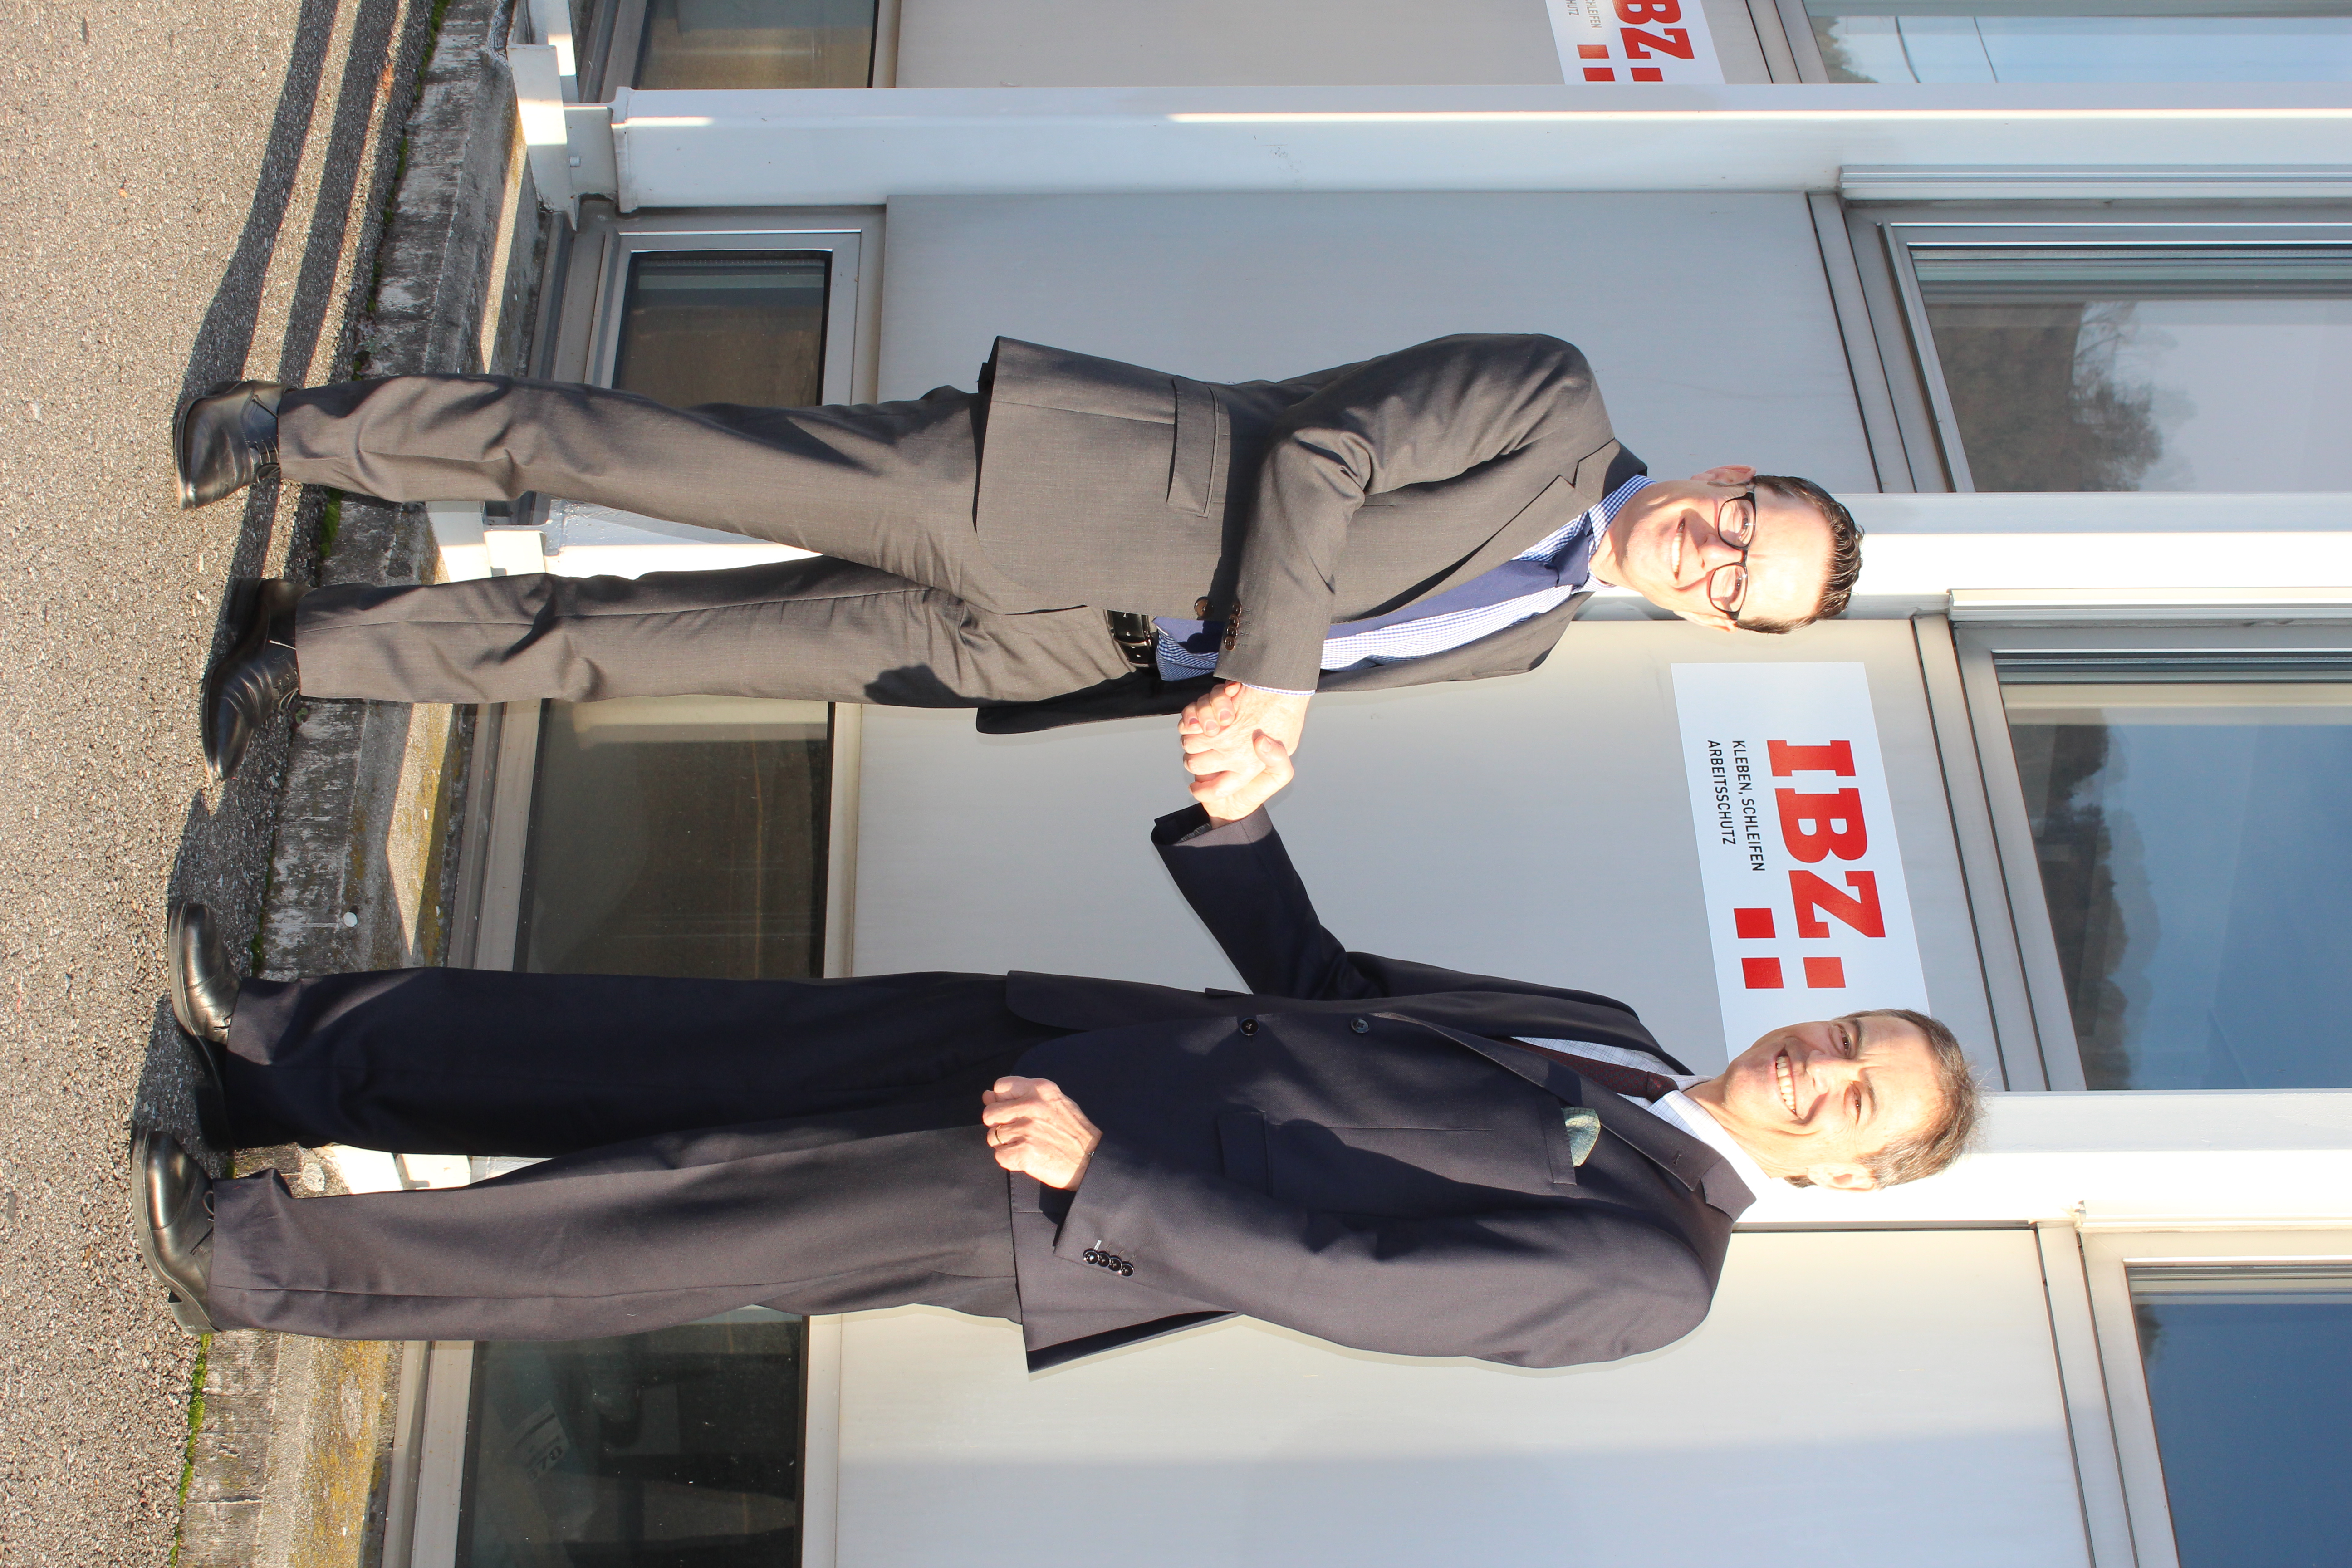 Remise des clés de l'IBZ Industrie AG entre Urs Egli et Roger Fehlmann. Les deux se tiennent devant le bâtiment de l'IBZ Industrie AG et se serrent la main.